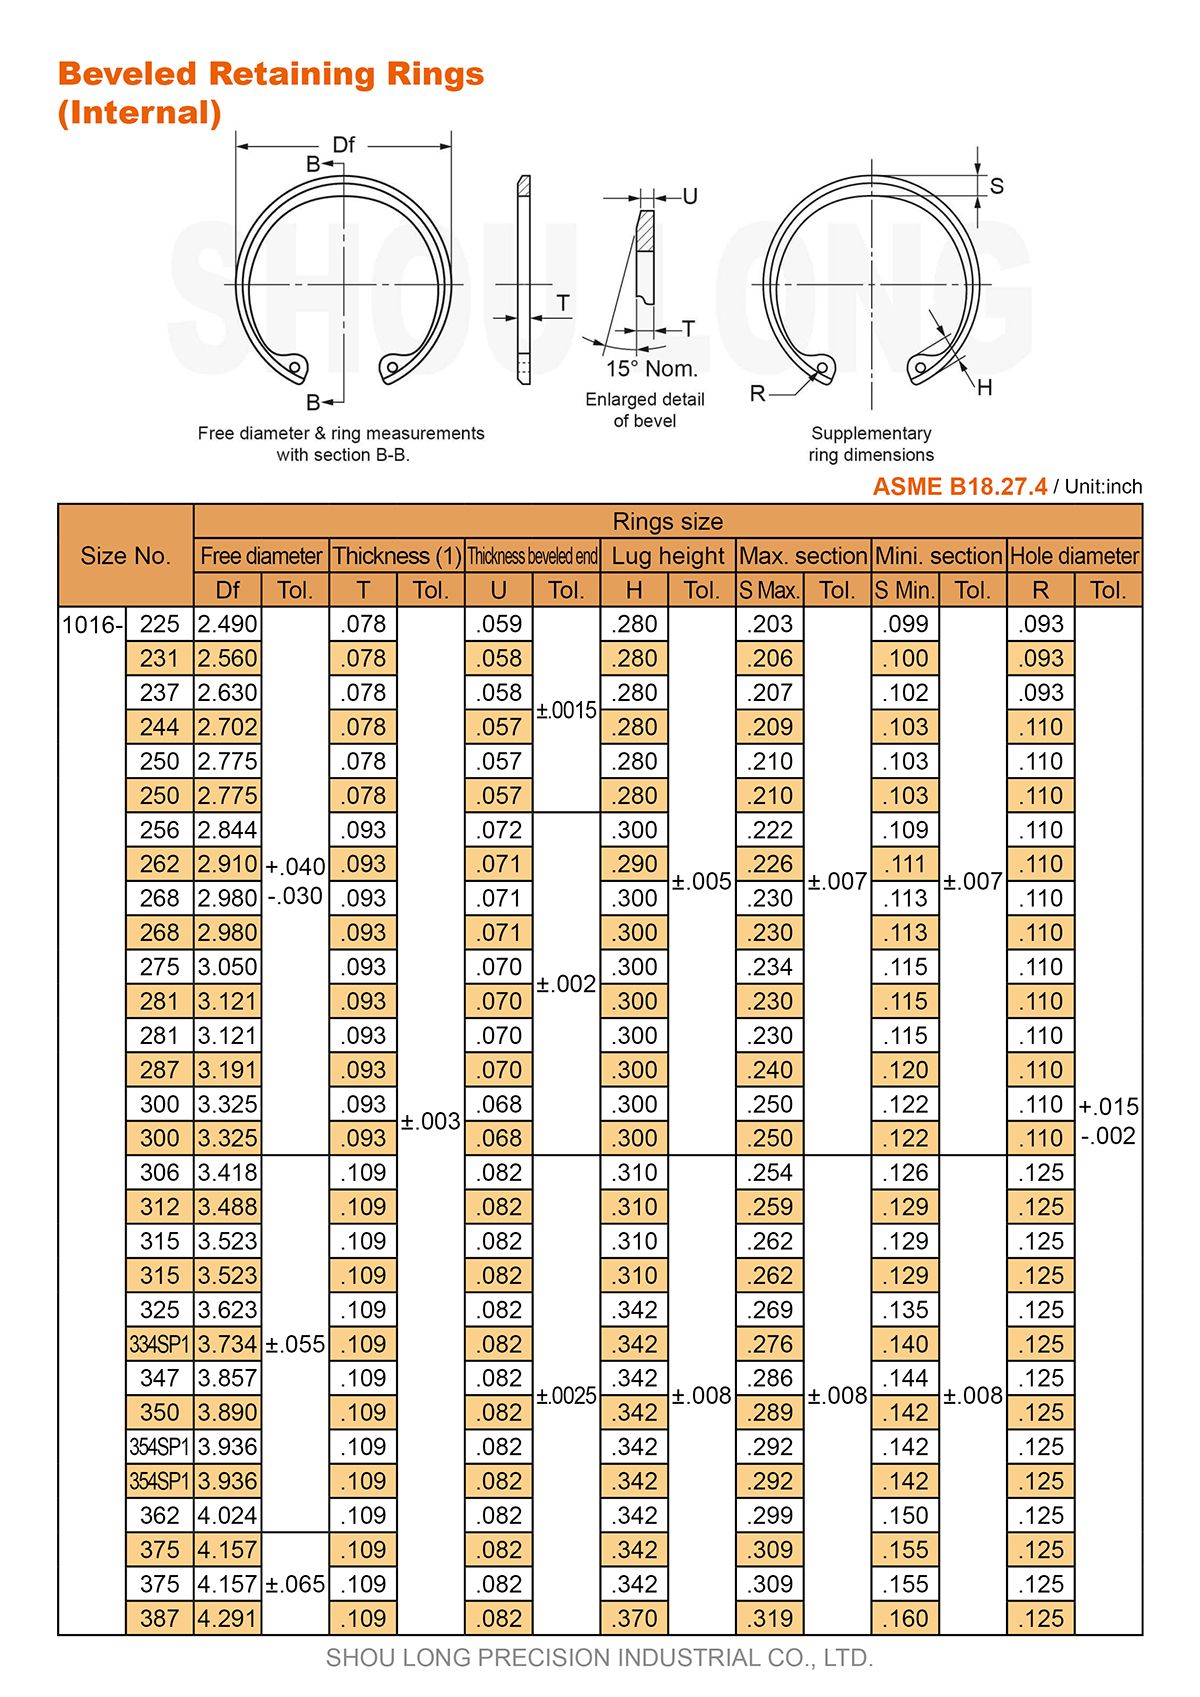 Спецификация дюймовых конических удерживающих колец для отверстий ASME/ANSI B18.27.4-2